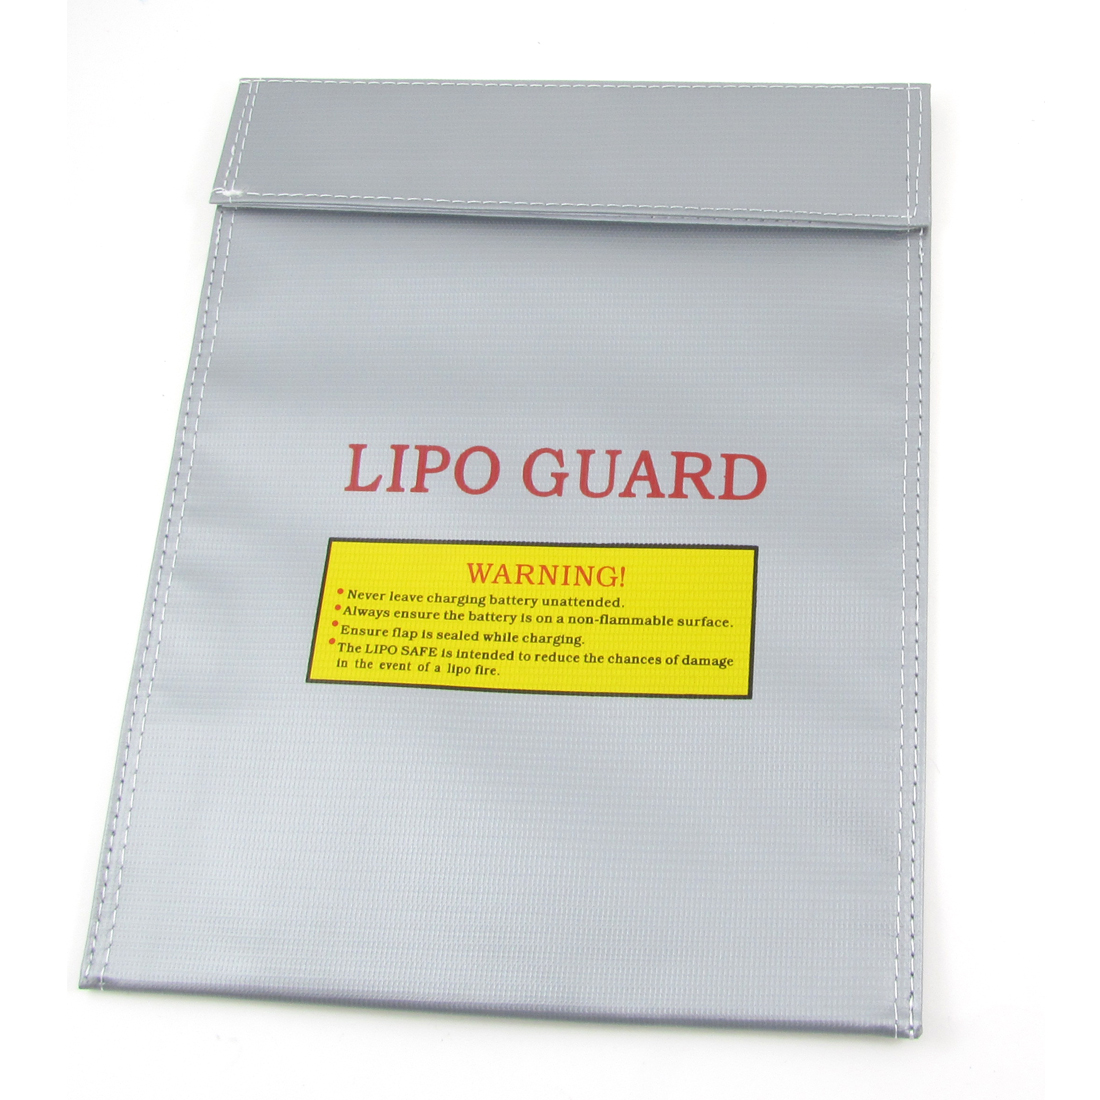 Unique Bargains 30cm x 23cm LiPo RC Battery Safe Guard Bag Charging Sack Save Pack Silver